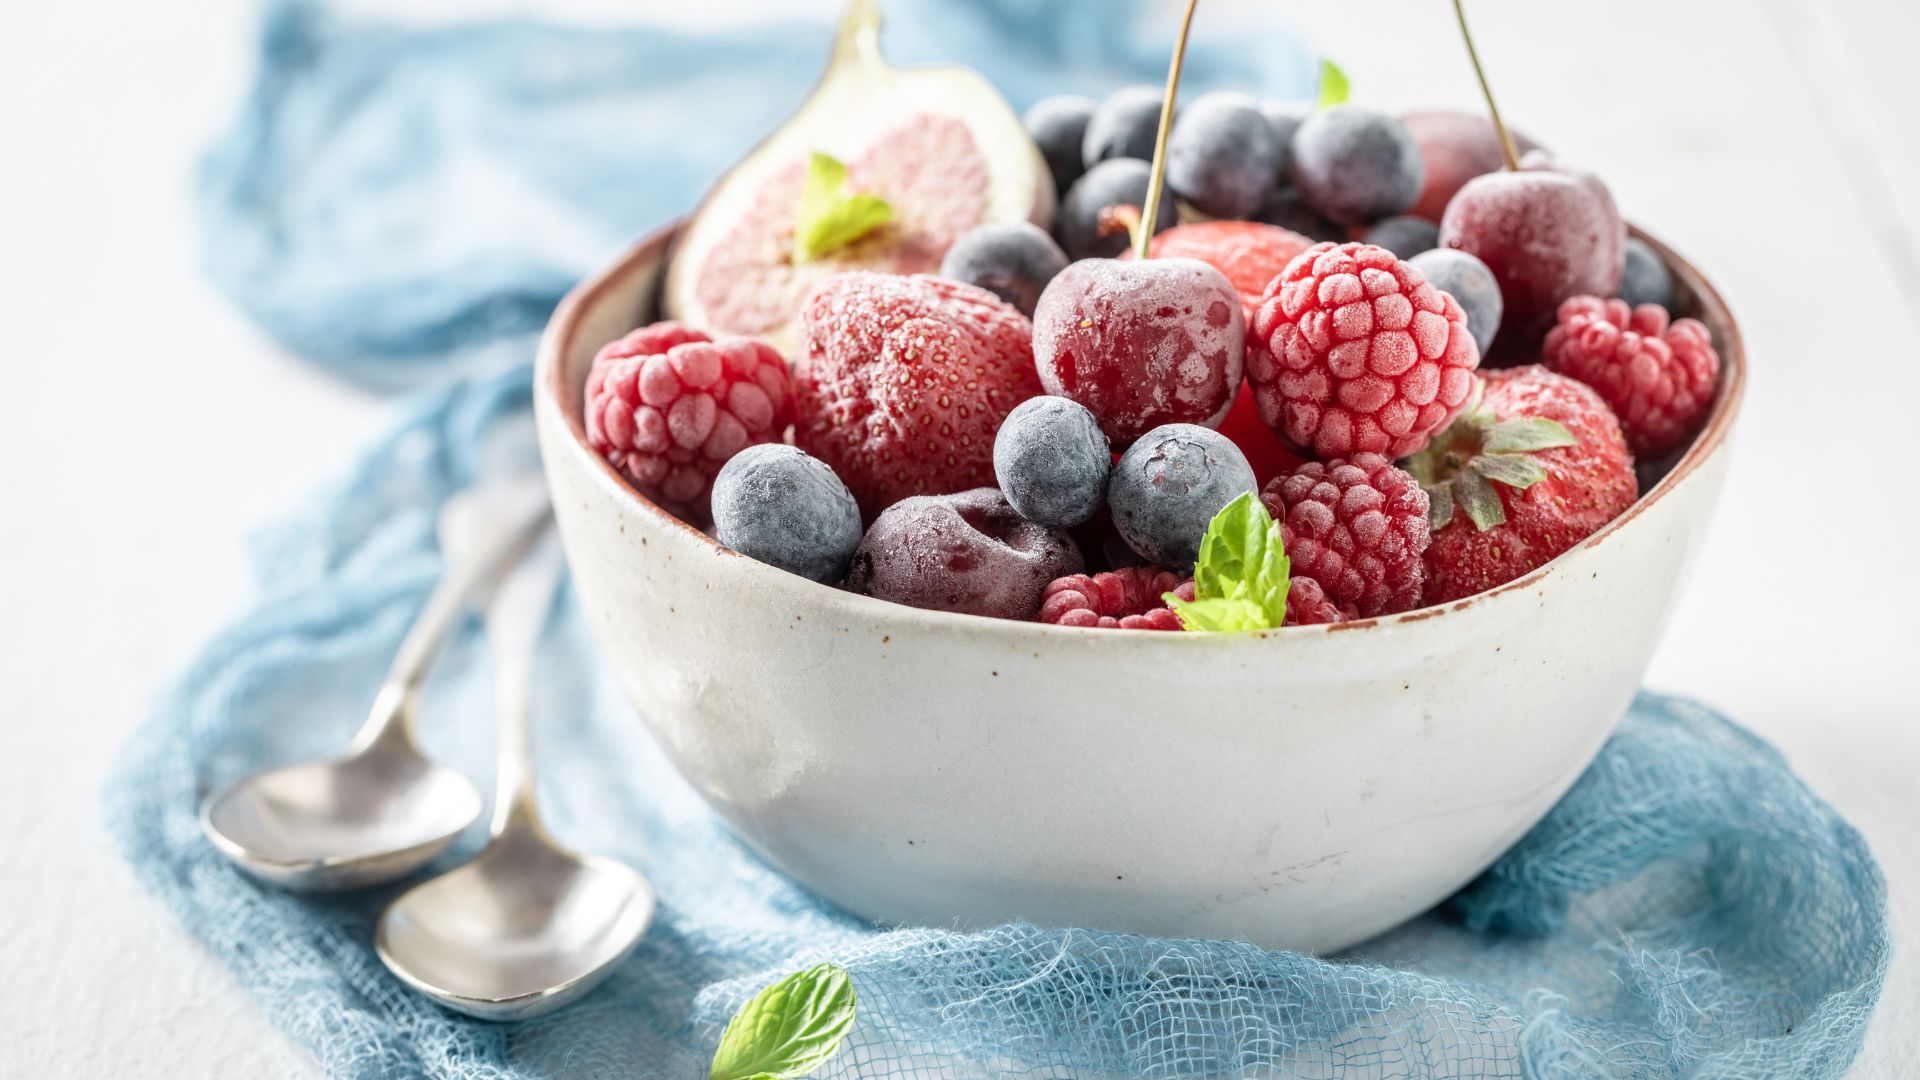 Beneficios de la fruta congelada - La unión